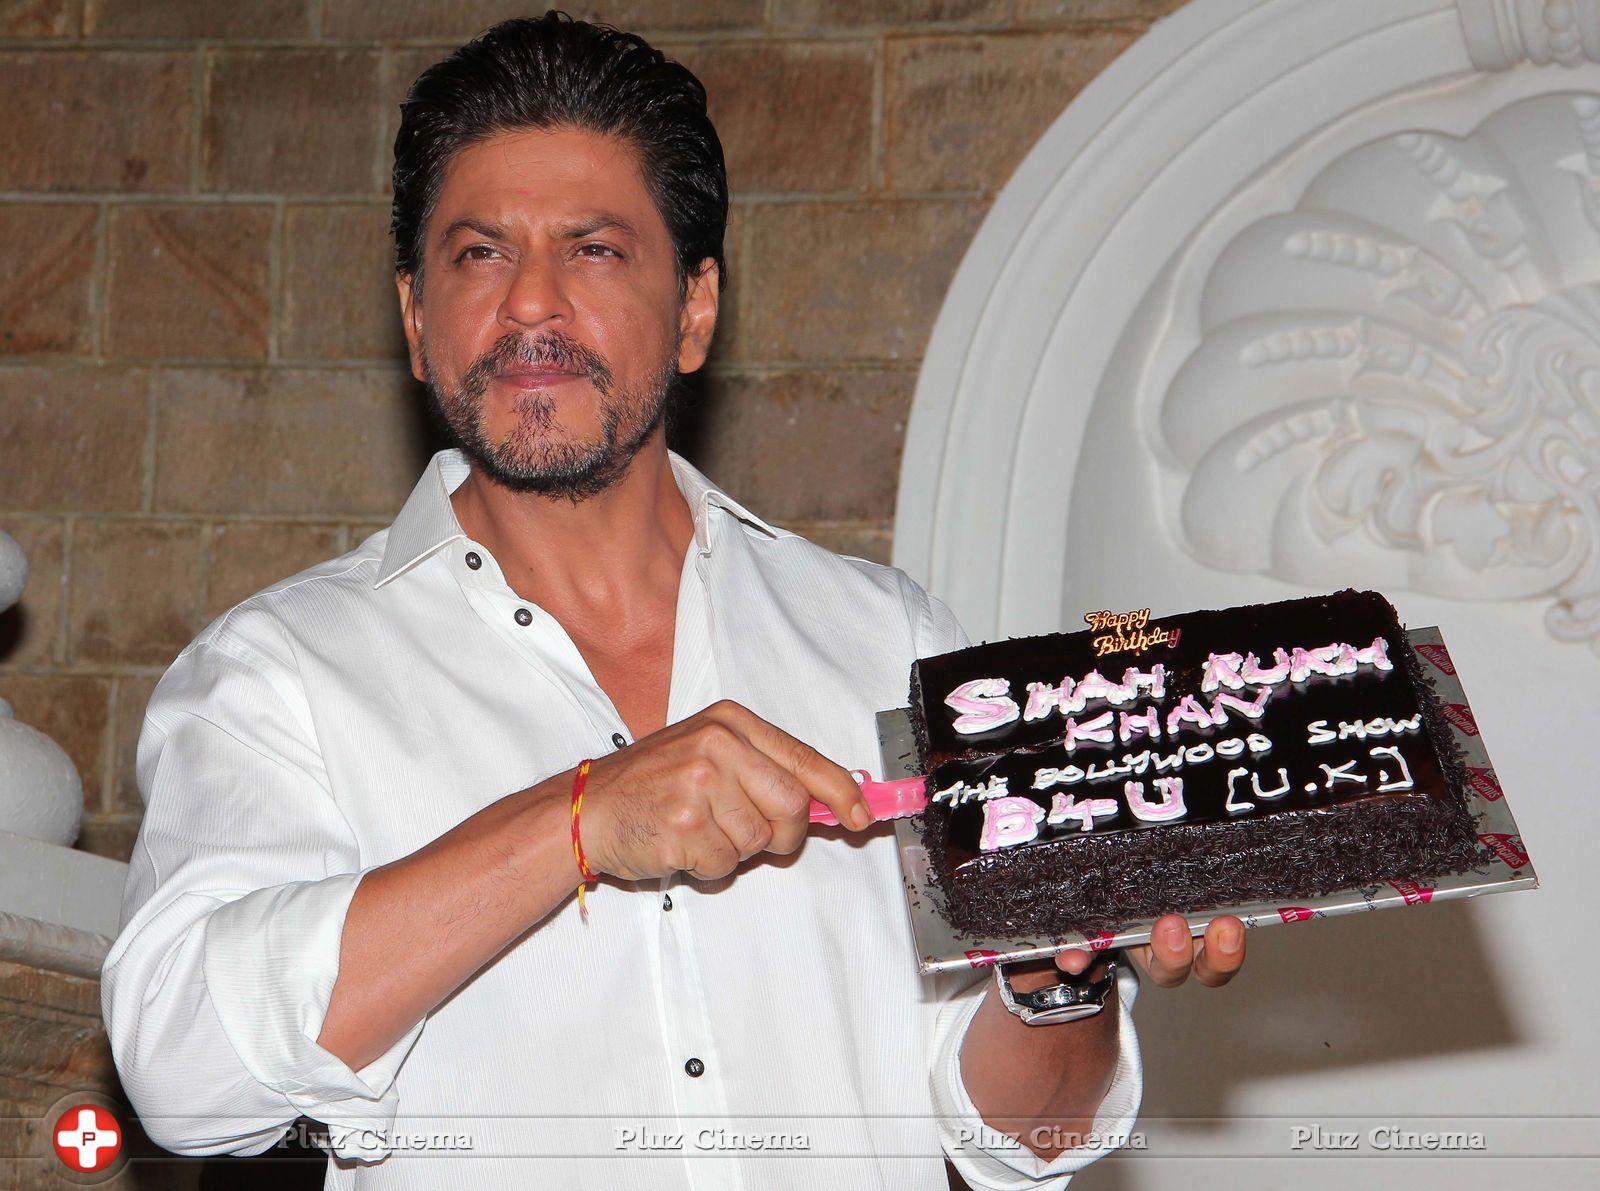 Shahrukh Khan - Shahrukh Khan Celebrates his 48th Birthday Photos | Picture 625652